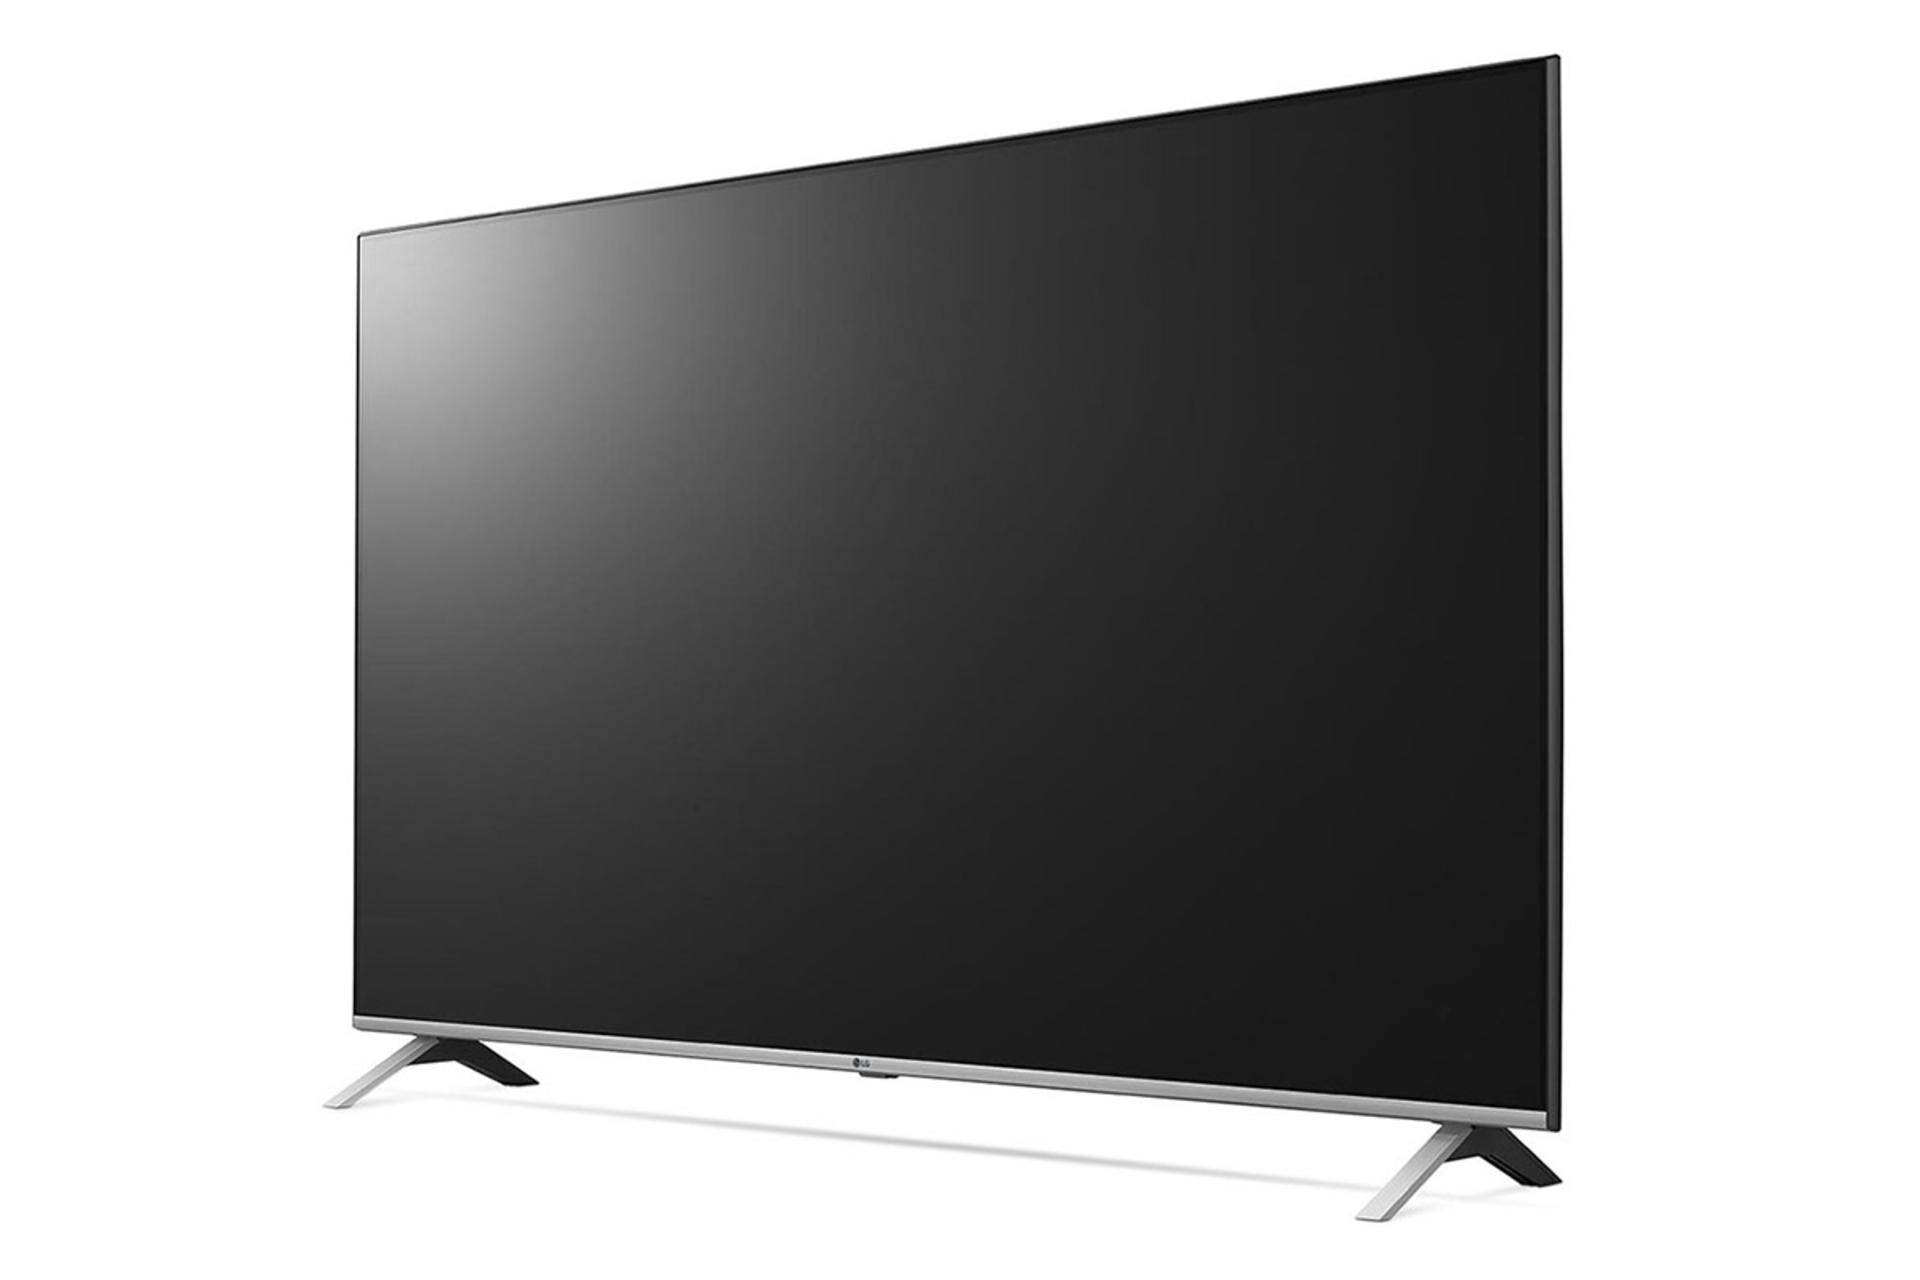 نمای نیمرخ تلویزیون ال جی UN8060 مدل 55 اینچ با صفحه خاموش